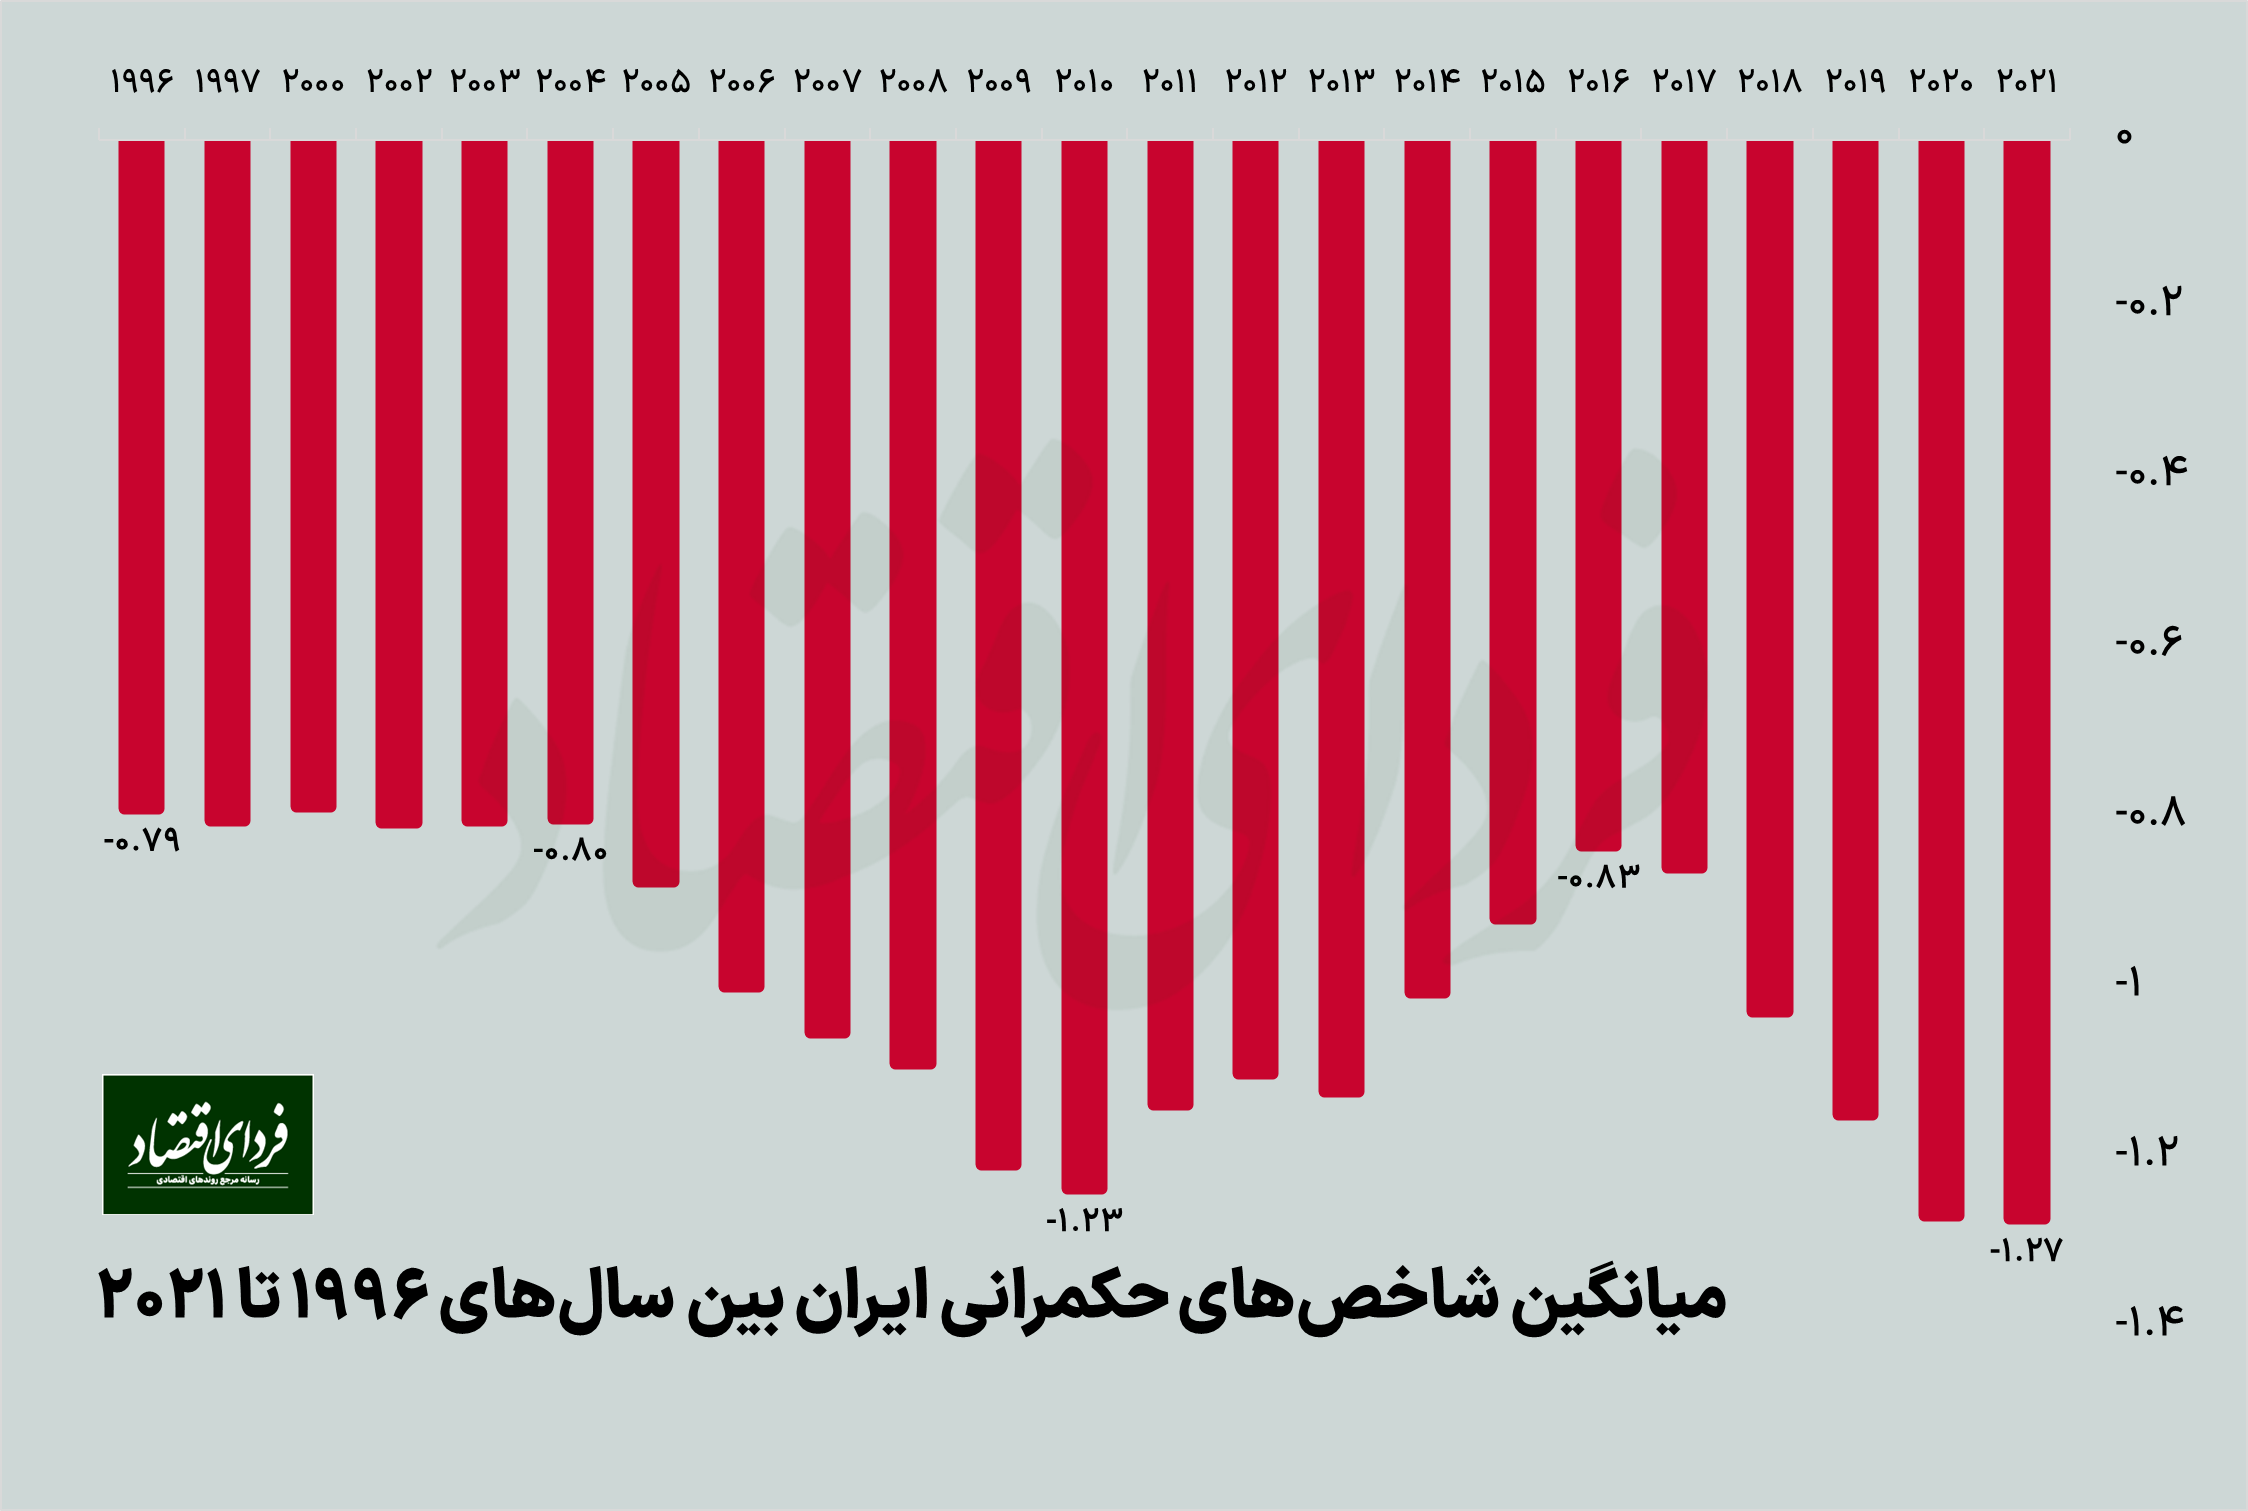 شاخص حکمرانی ایران در ۲۵ سال گذشته چه تغییری کرده است؟